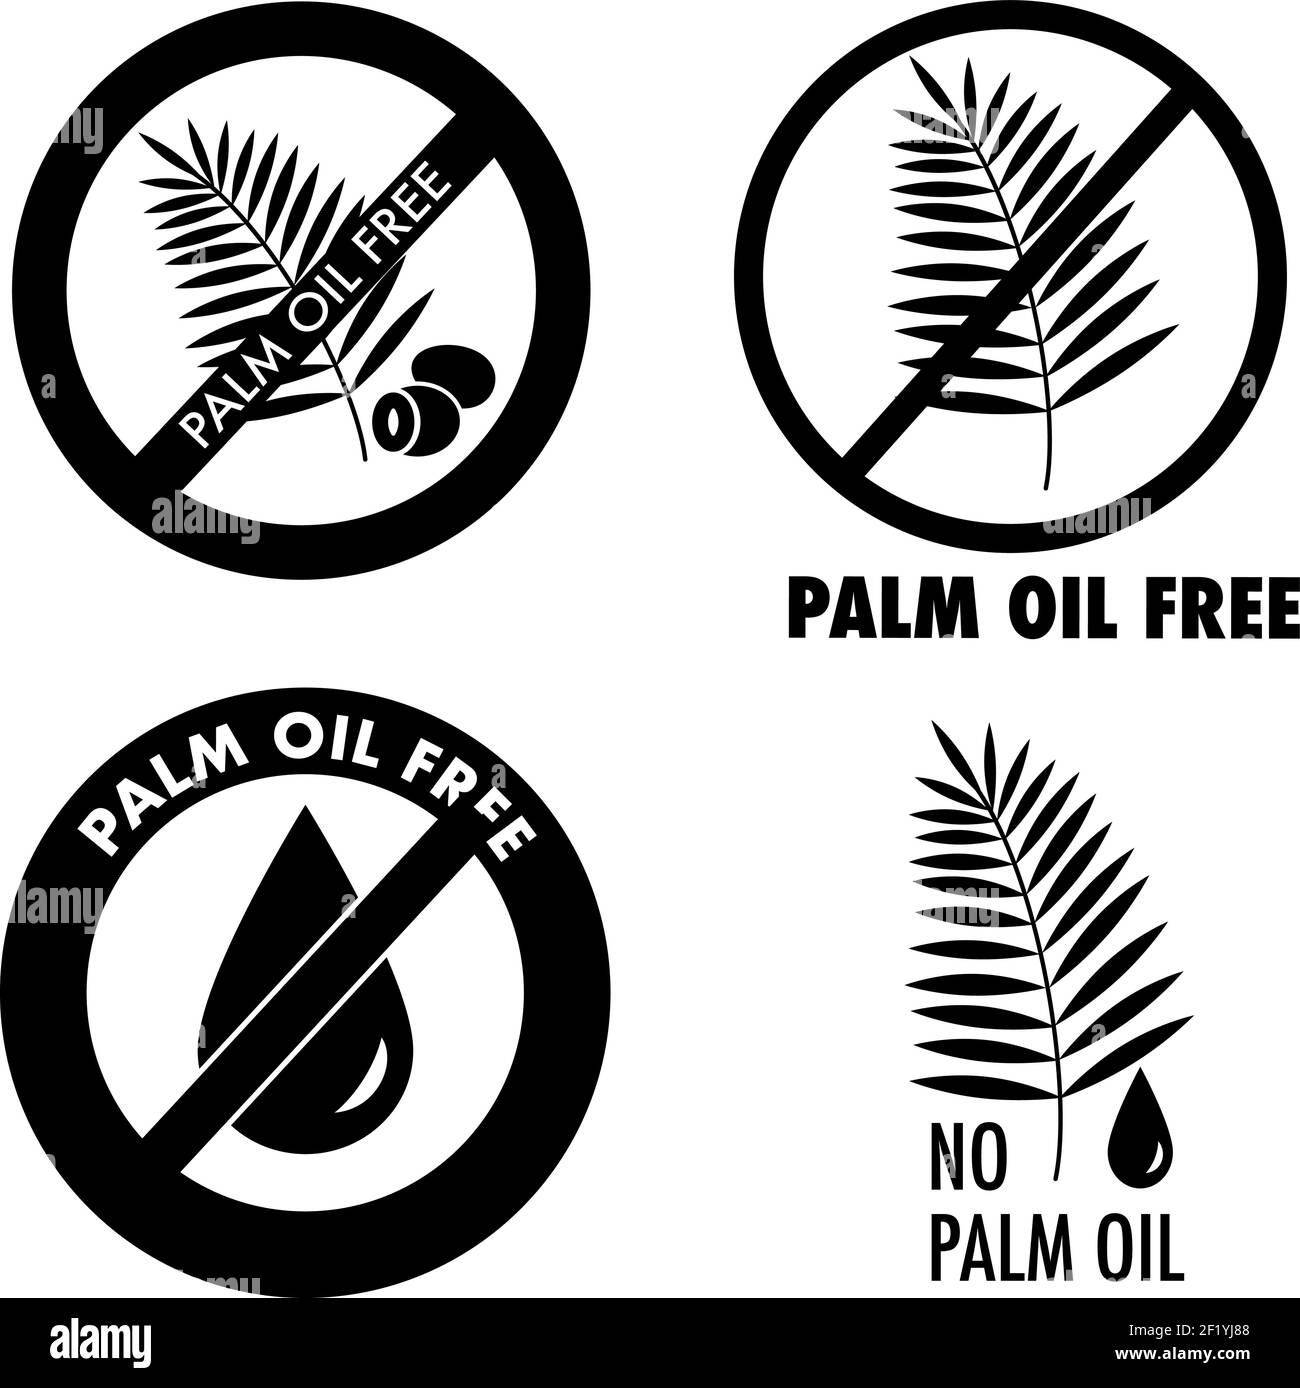 Palmöl frei, keine Palmöl-Symbole. Schwarze und weiße Logo-Etiketten isoliert auf weißem Hintergrund. Vektorgrafik. Stock Vektor